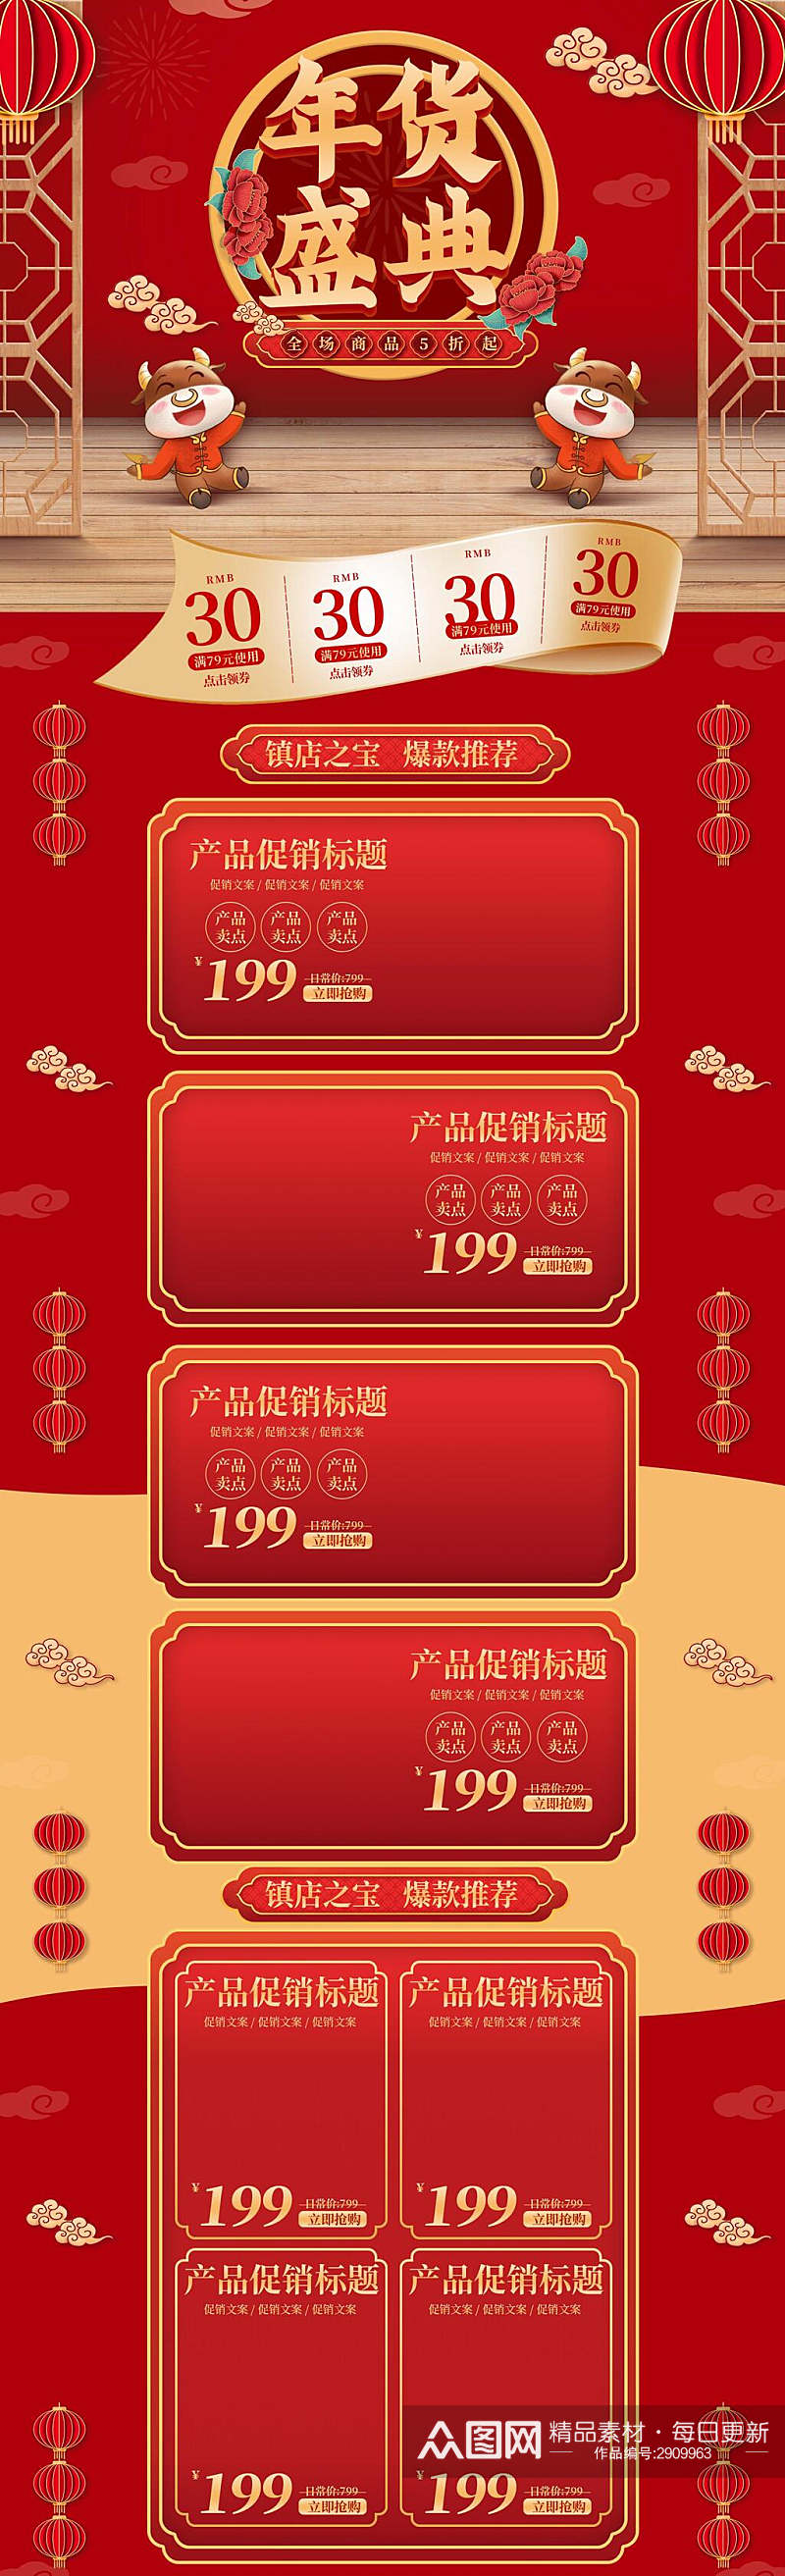 中国风年货节盛典电商首页素材